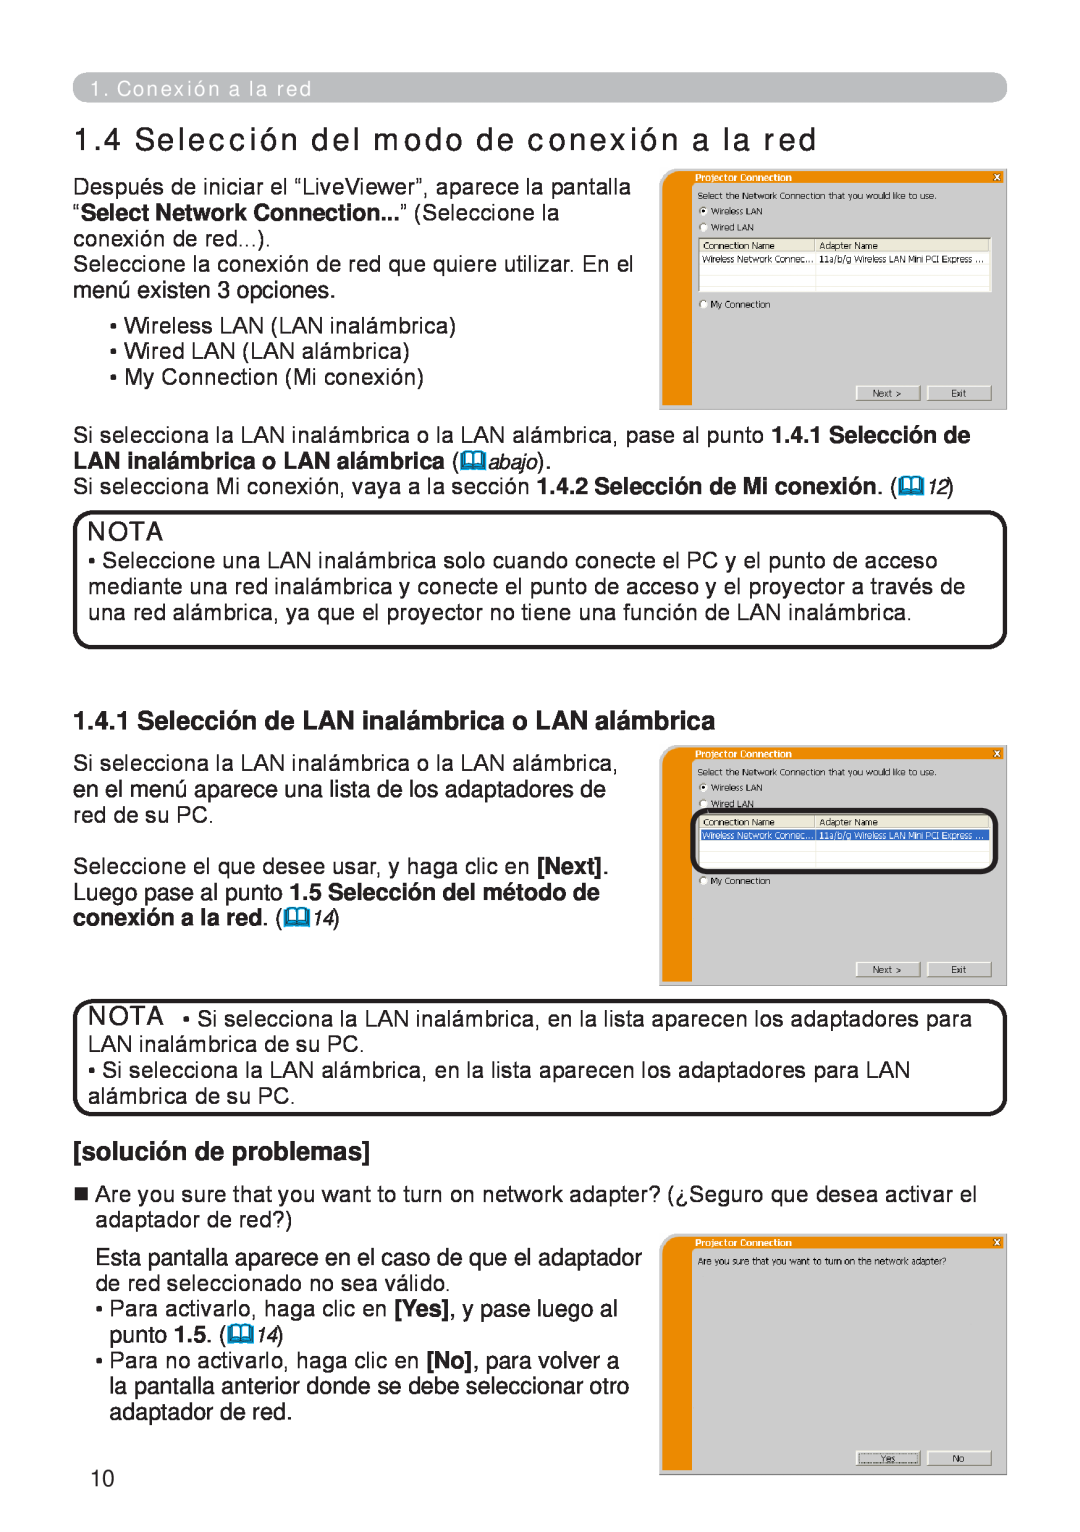 InFocus W61, W60 manual Selección del modo de conexión a la red, Nota, Selección de LAN inalámbrica o LAN alámbrica 